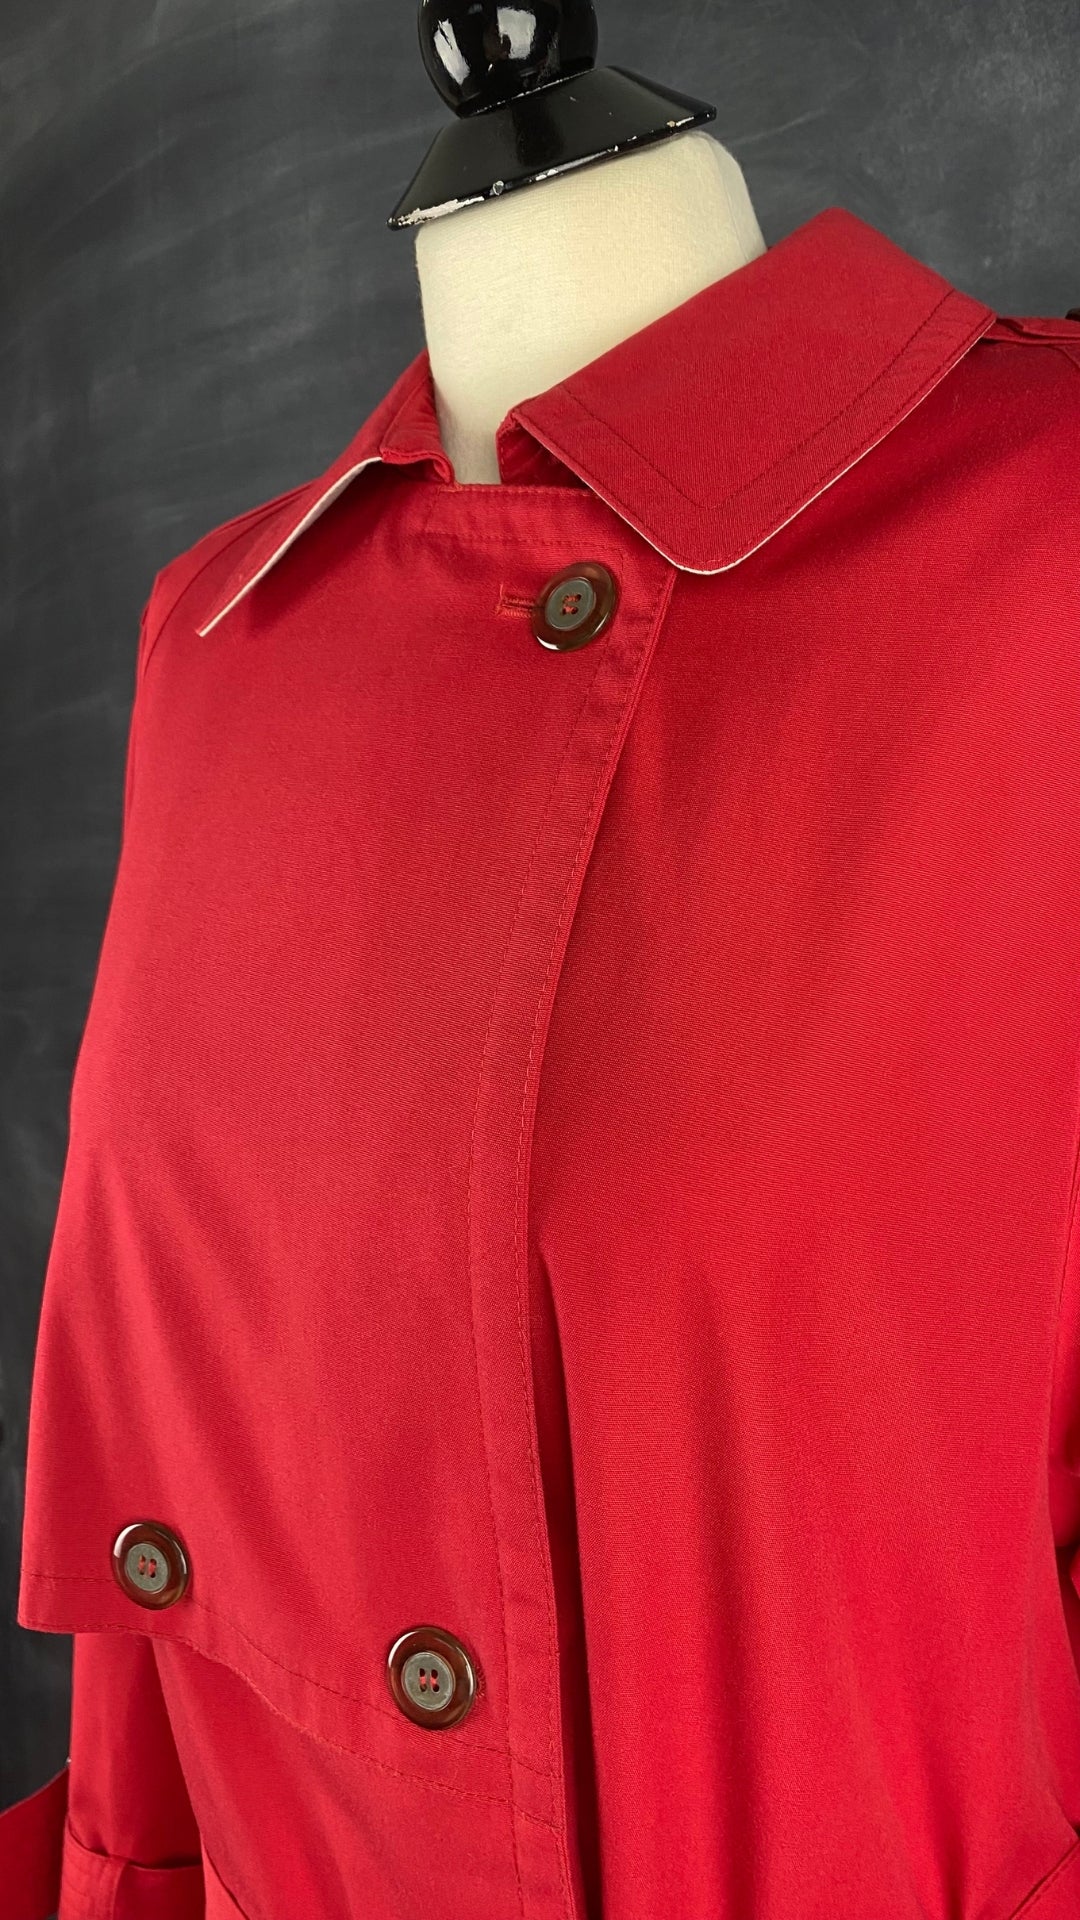 Manteau long vintage style trench rouge, taille small/medium. Vue de l'encolure.